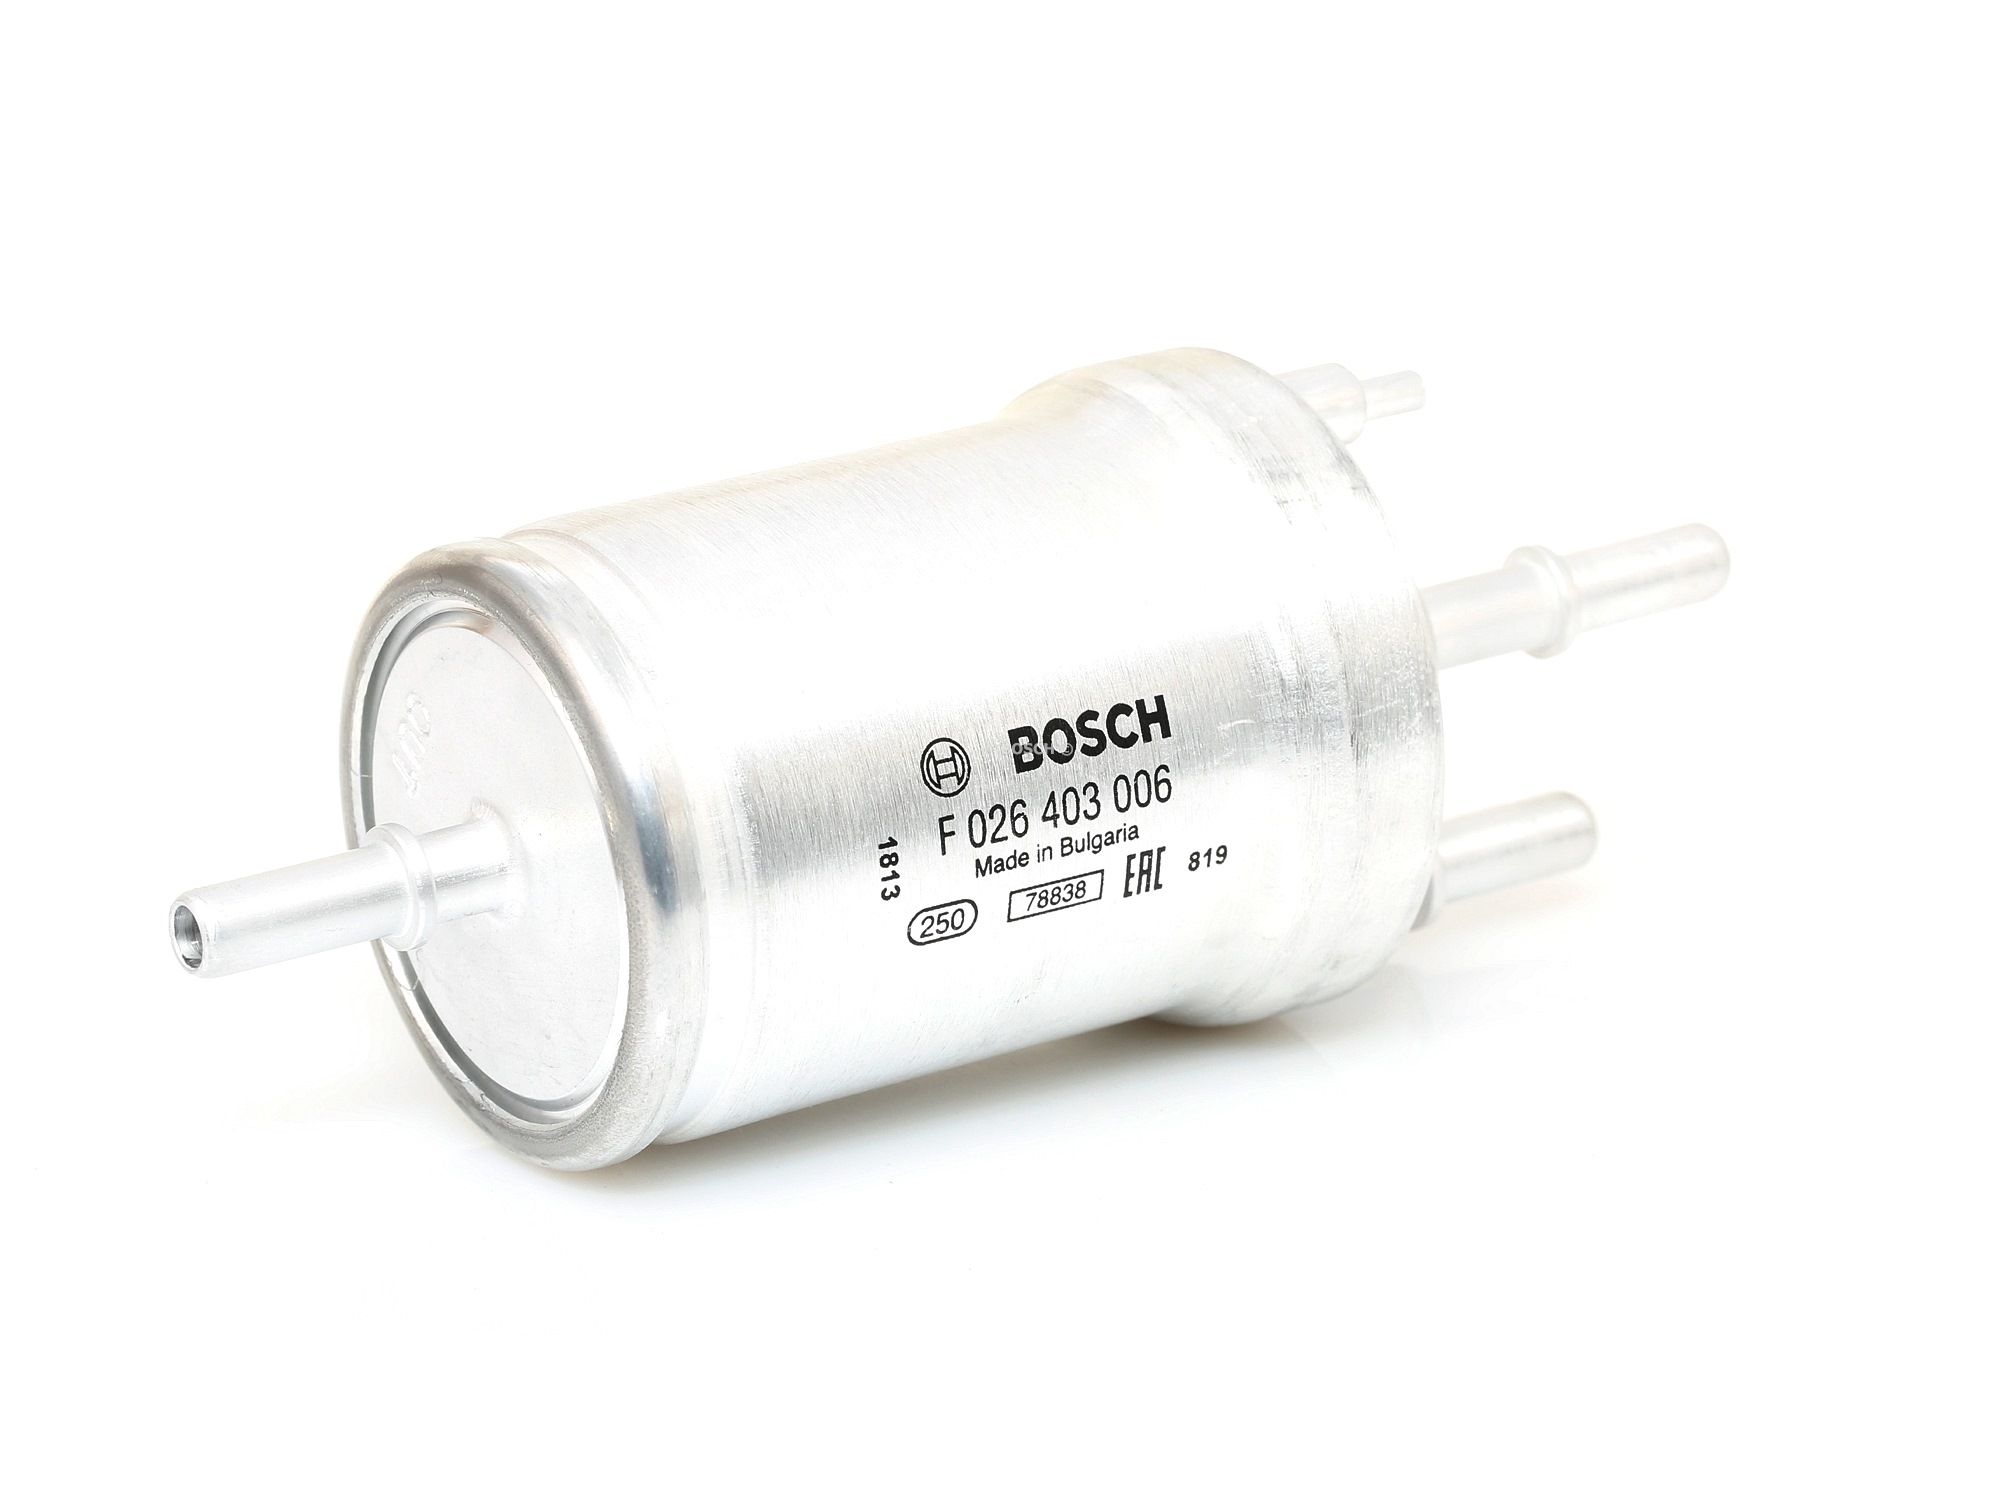 Palivový filtr F 026 403 006 s vynikajícím poměrem mezi cenou a BOSCH kvalitou